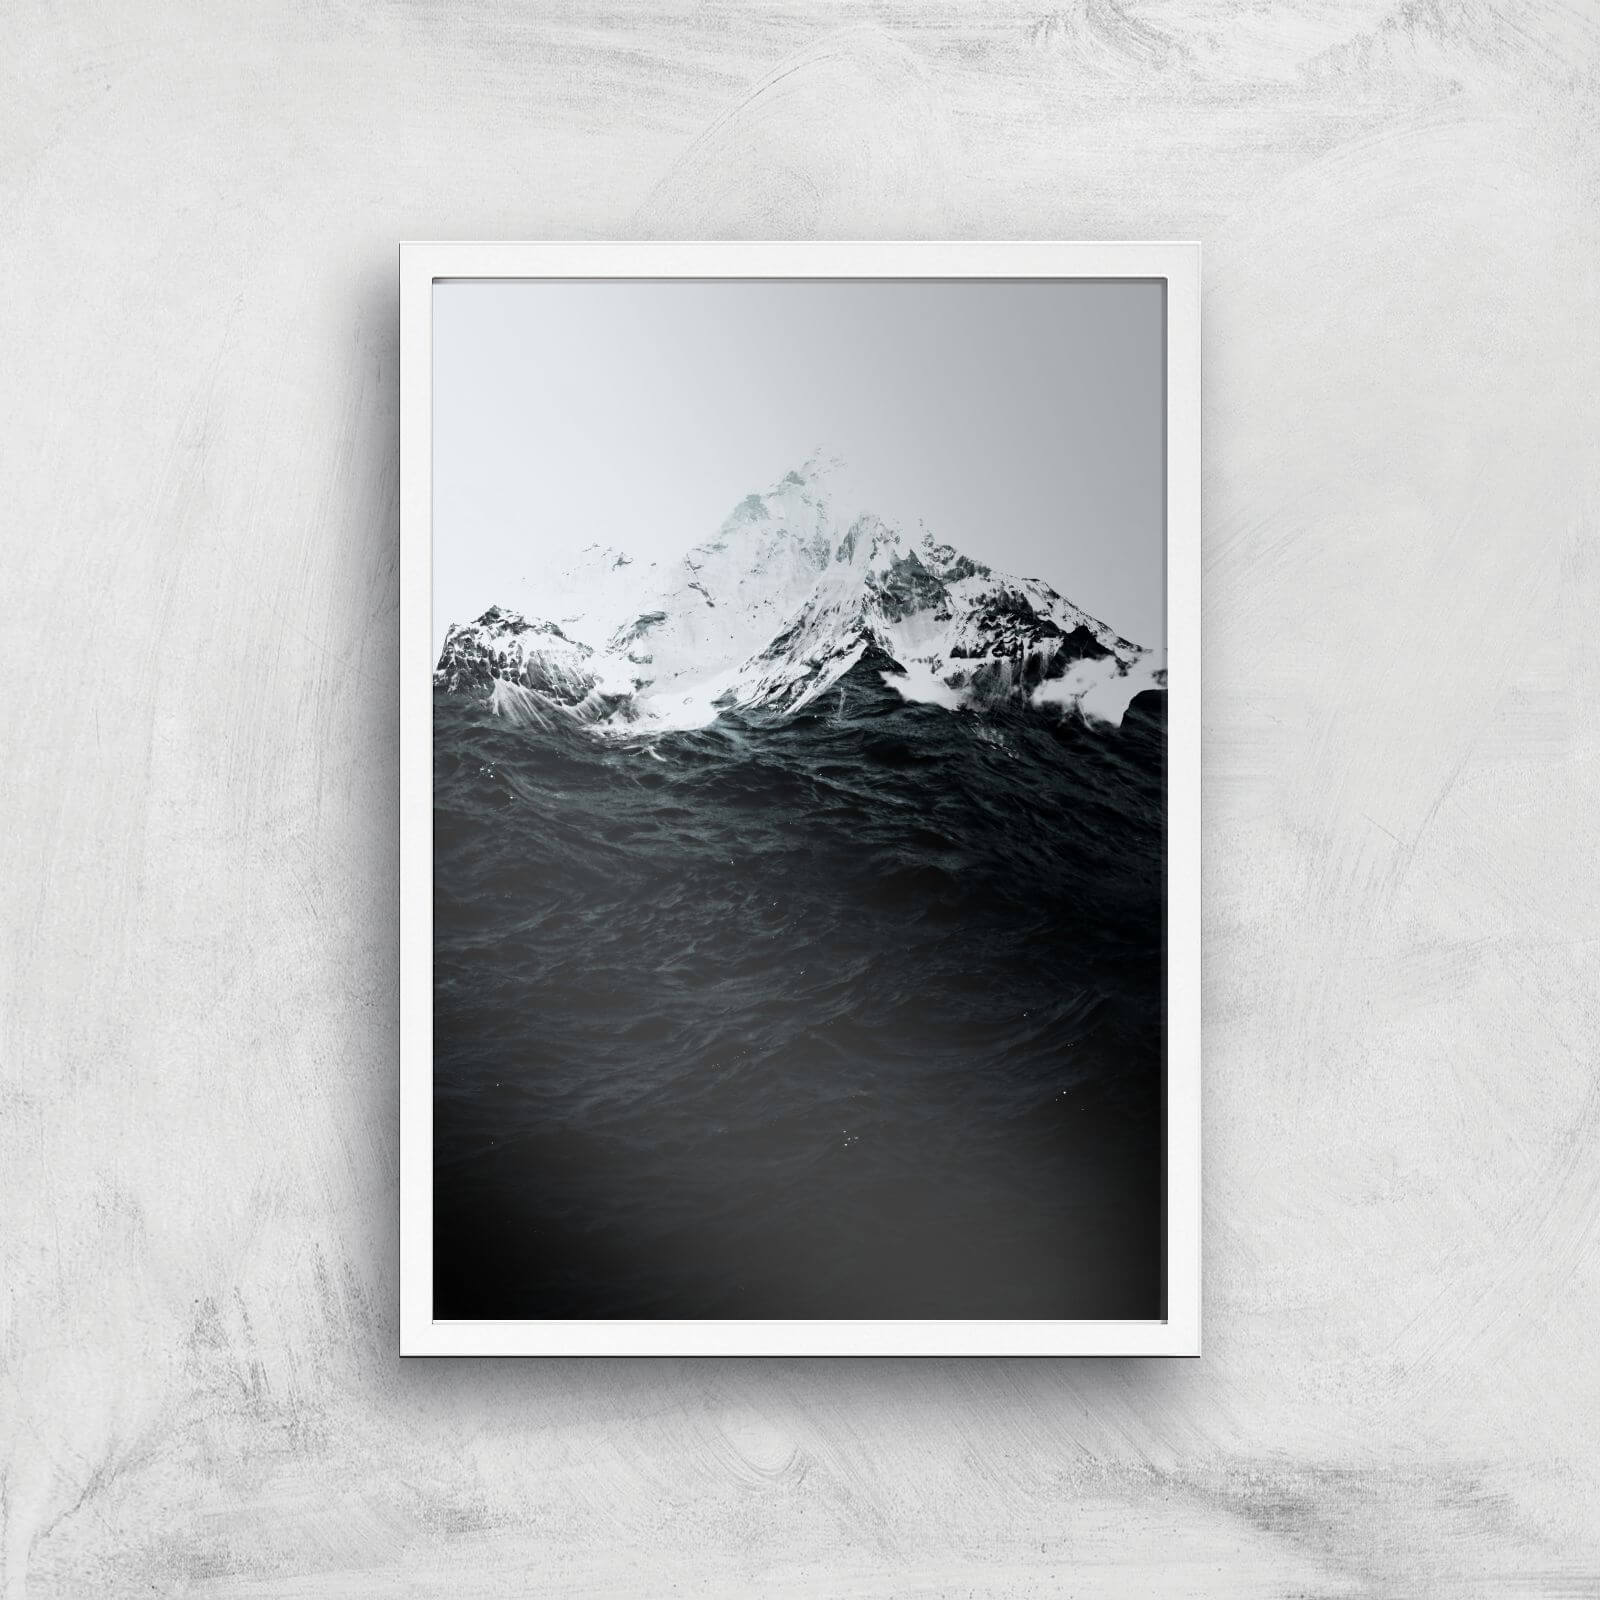 Those Waves Were Like Mountains Giclee Art Print - A3 - White Frame